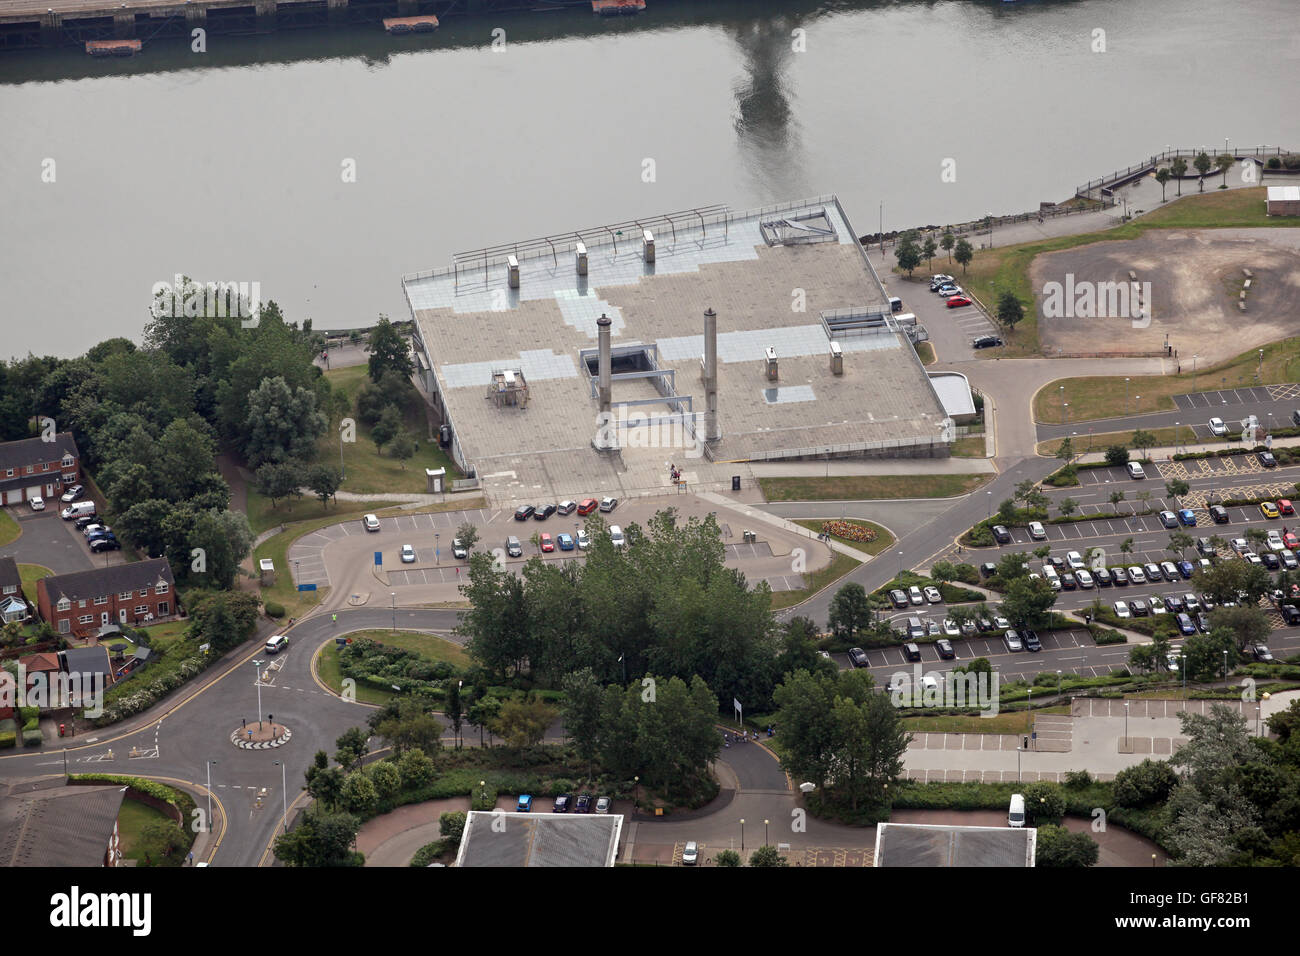 Vista aérea de la de techo plano National Glass Centre en el río desgaste, Sunderland, Reino Unido Foto de stock